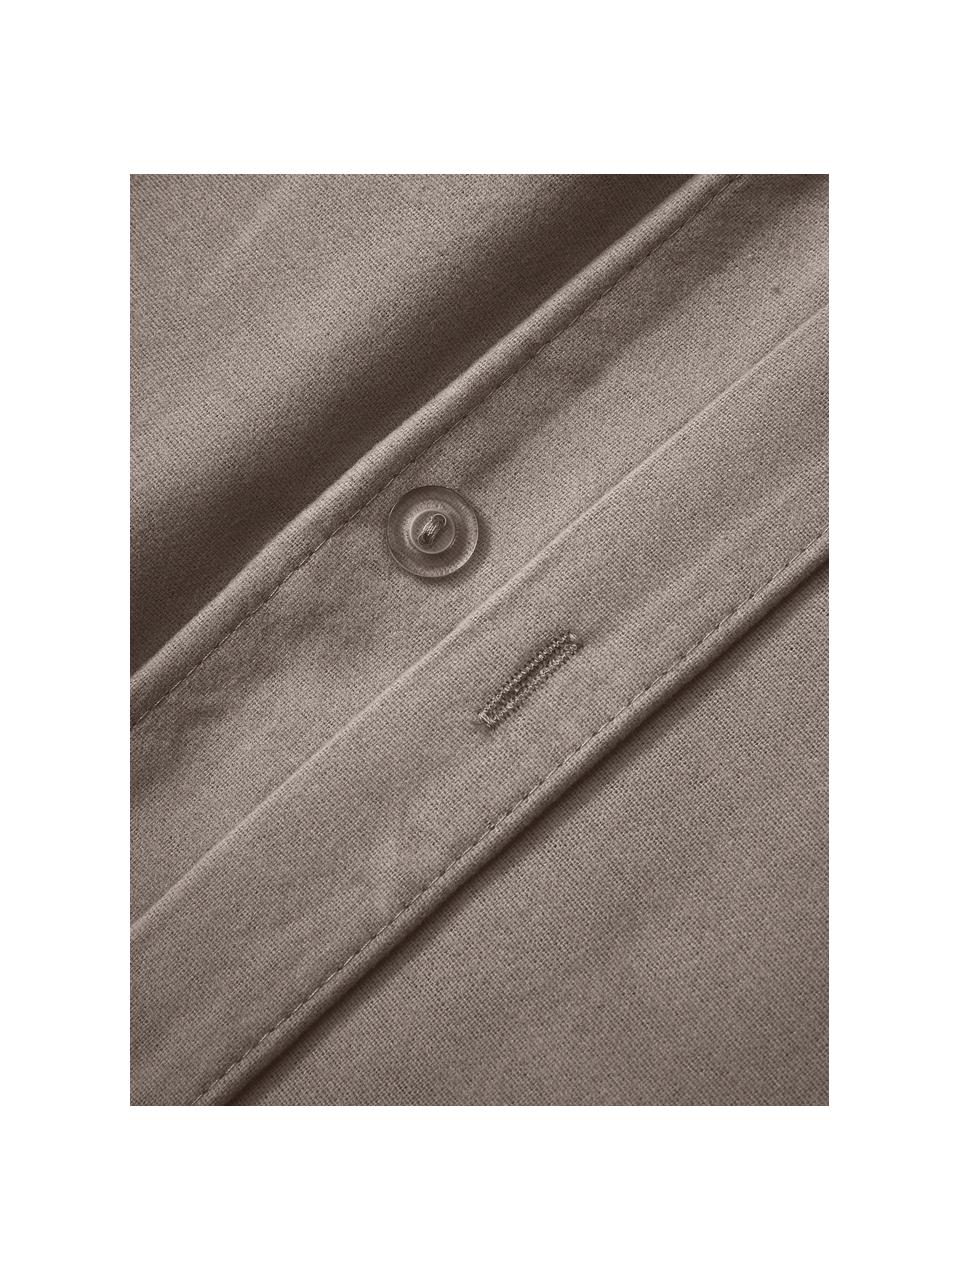 Flanelový povlak na přikrývku Biba, Taupe, Š 140 cm, D 200 cm